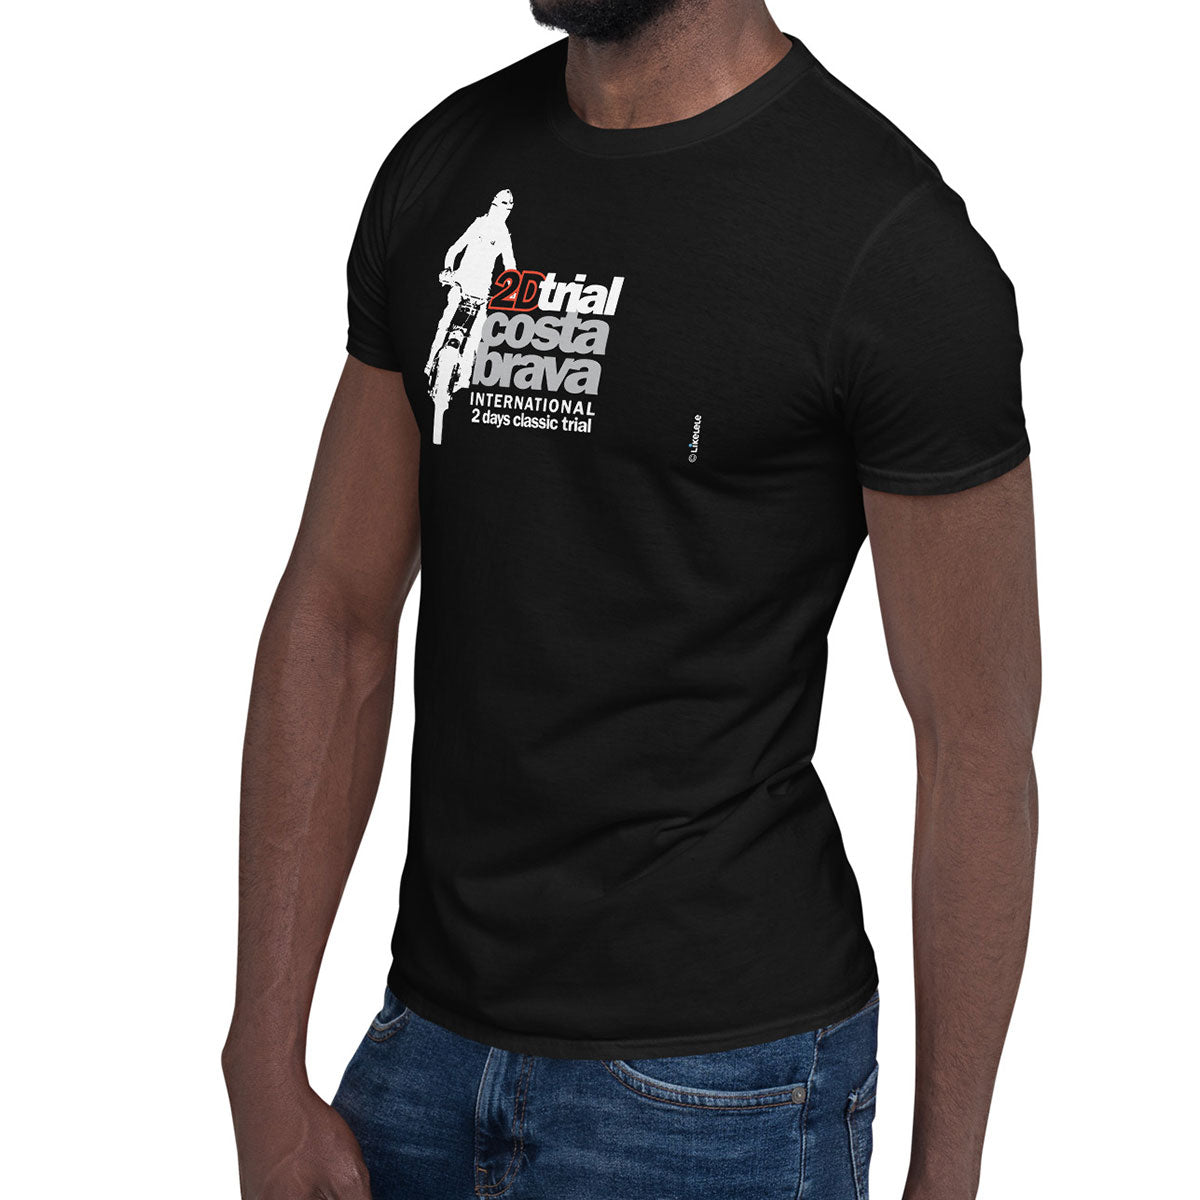 2D TRIAL COSTA BRAVA · Camiseta m/corta·Hombre/Unisex · Basic·Negro-129c1